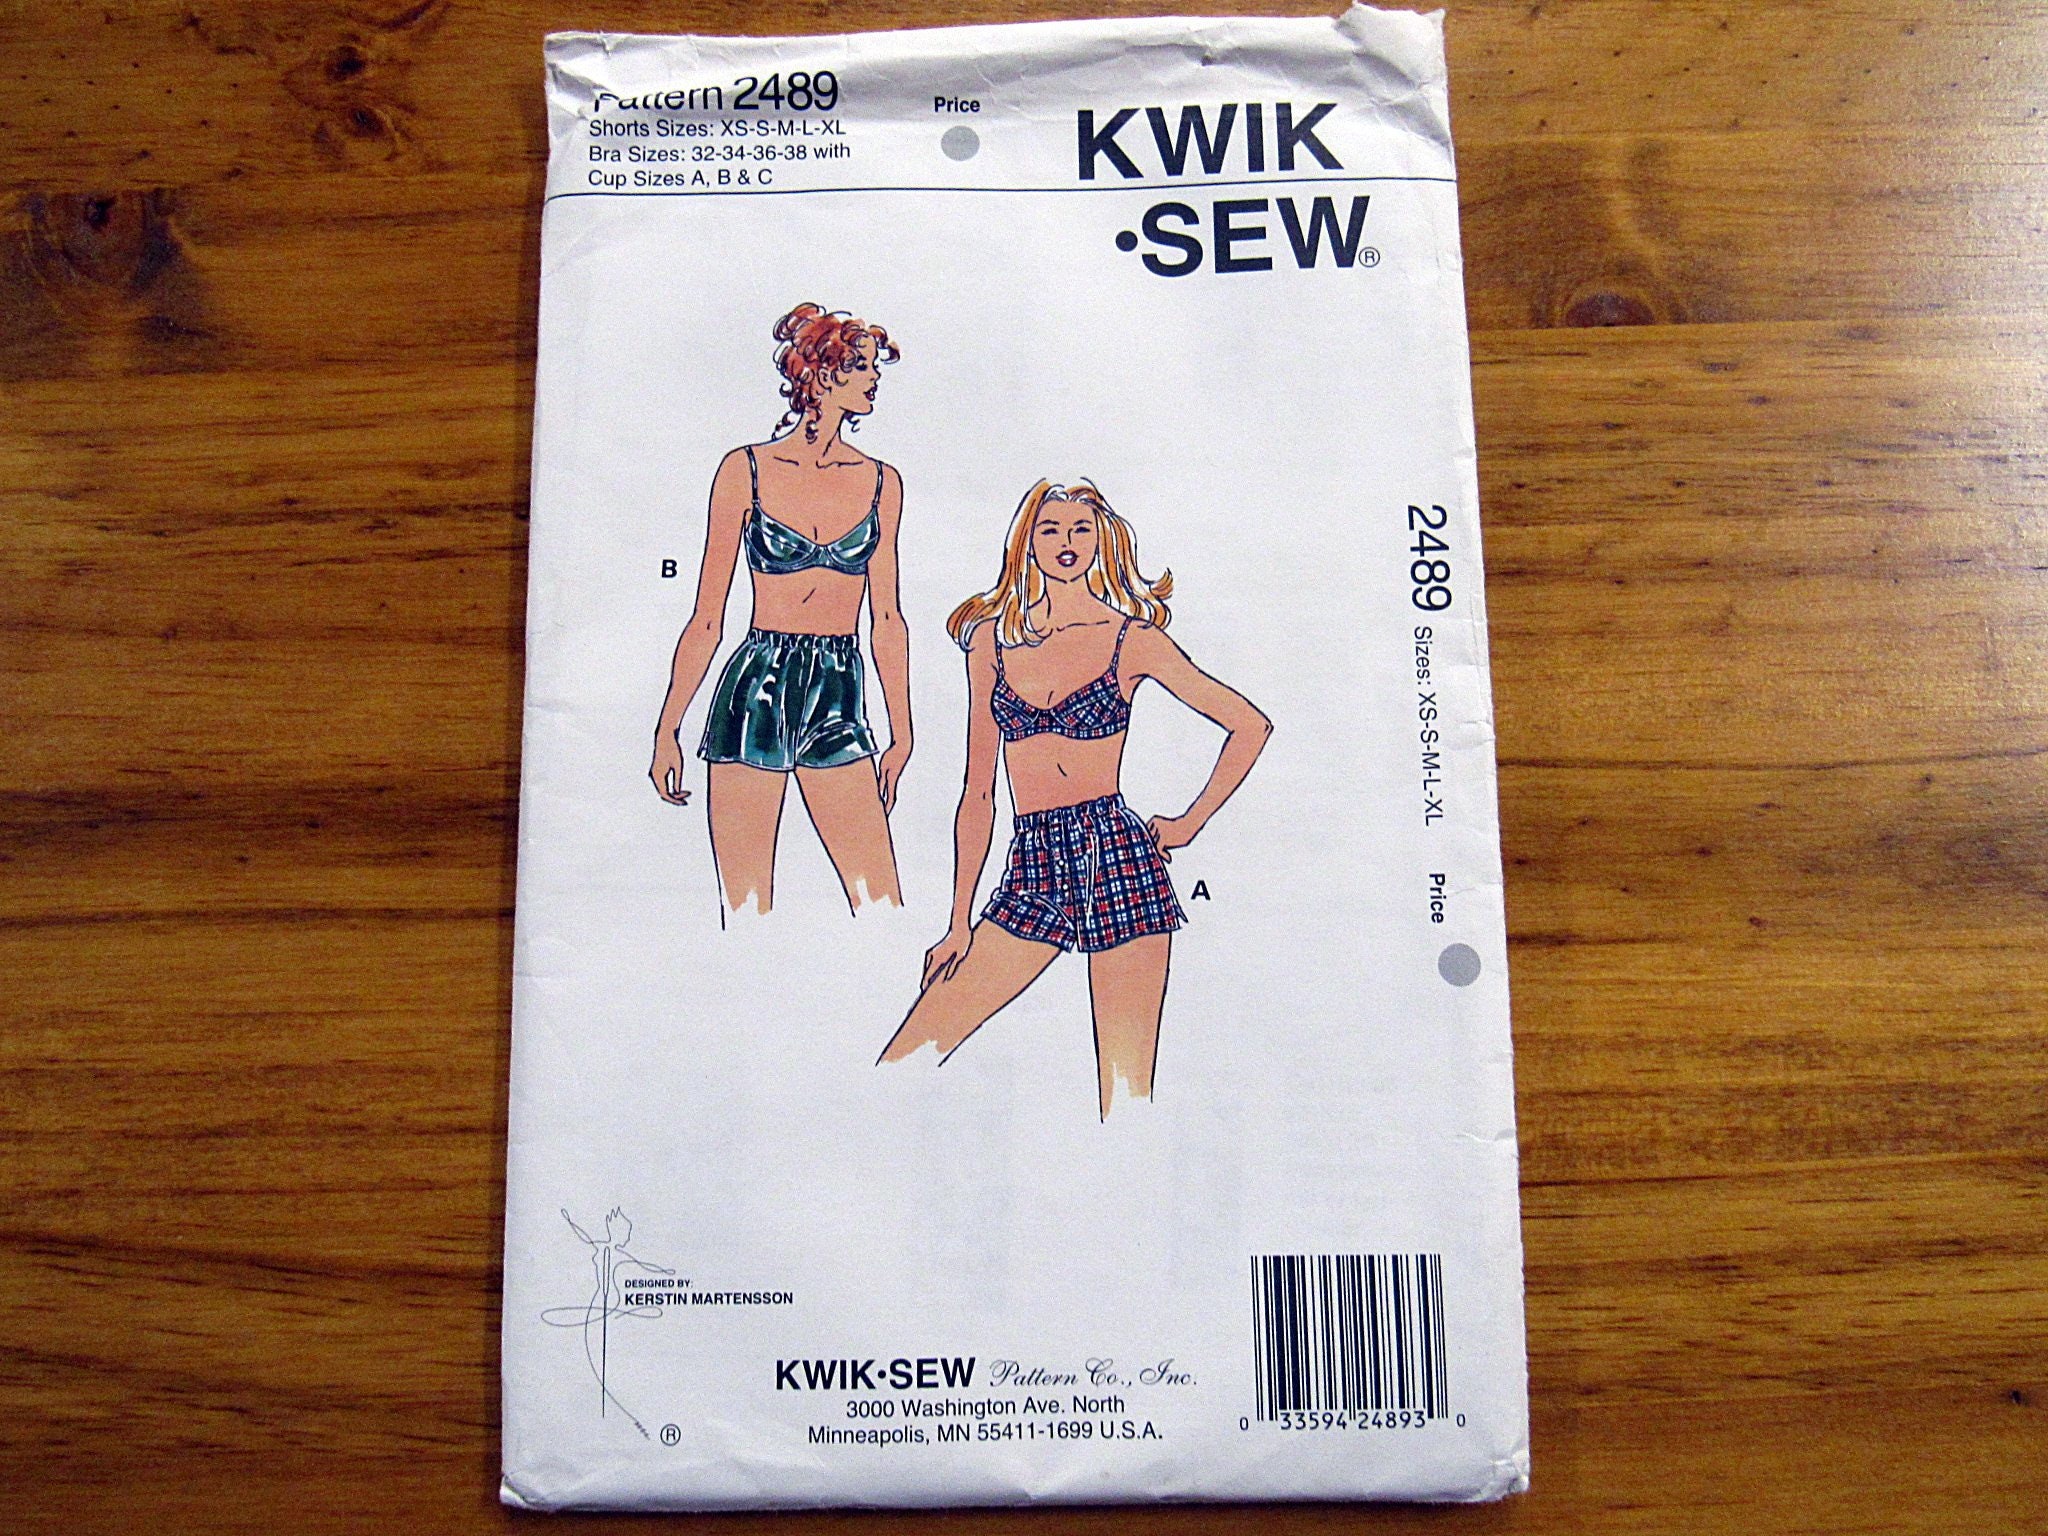 Kwik Sew K3594 Bra with Adjustable Shoulder Straps and Multiple